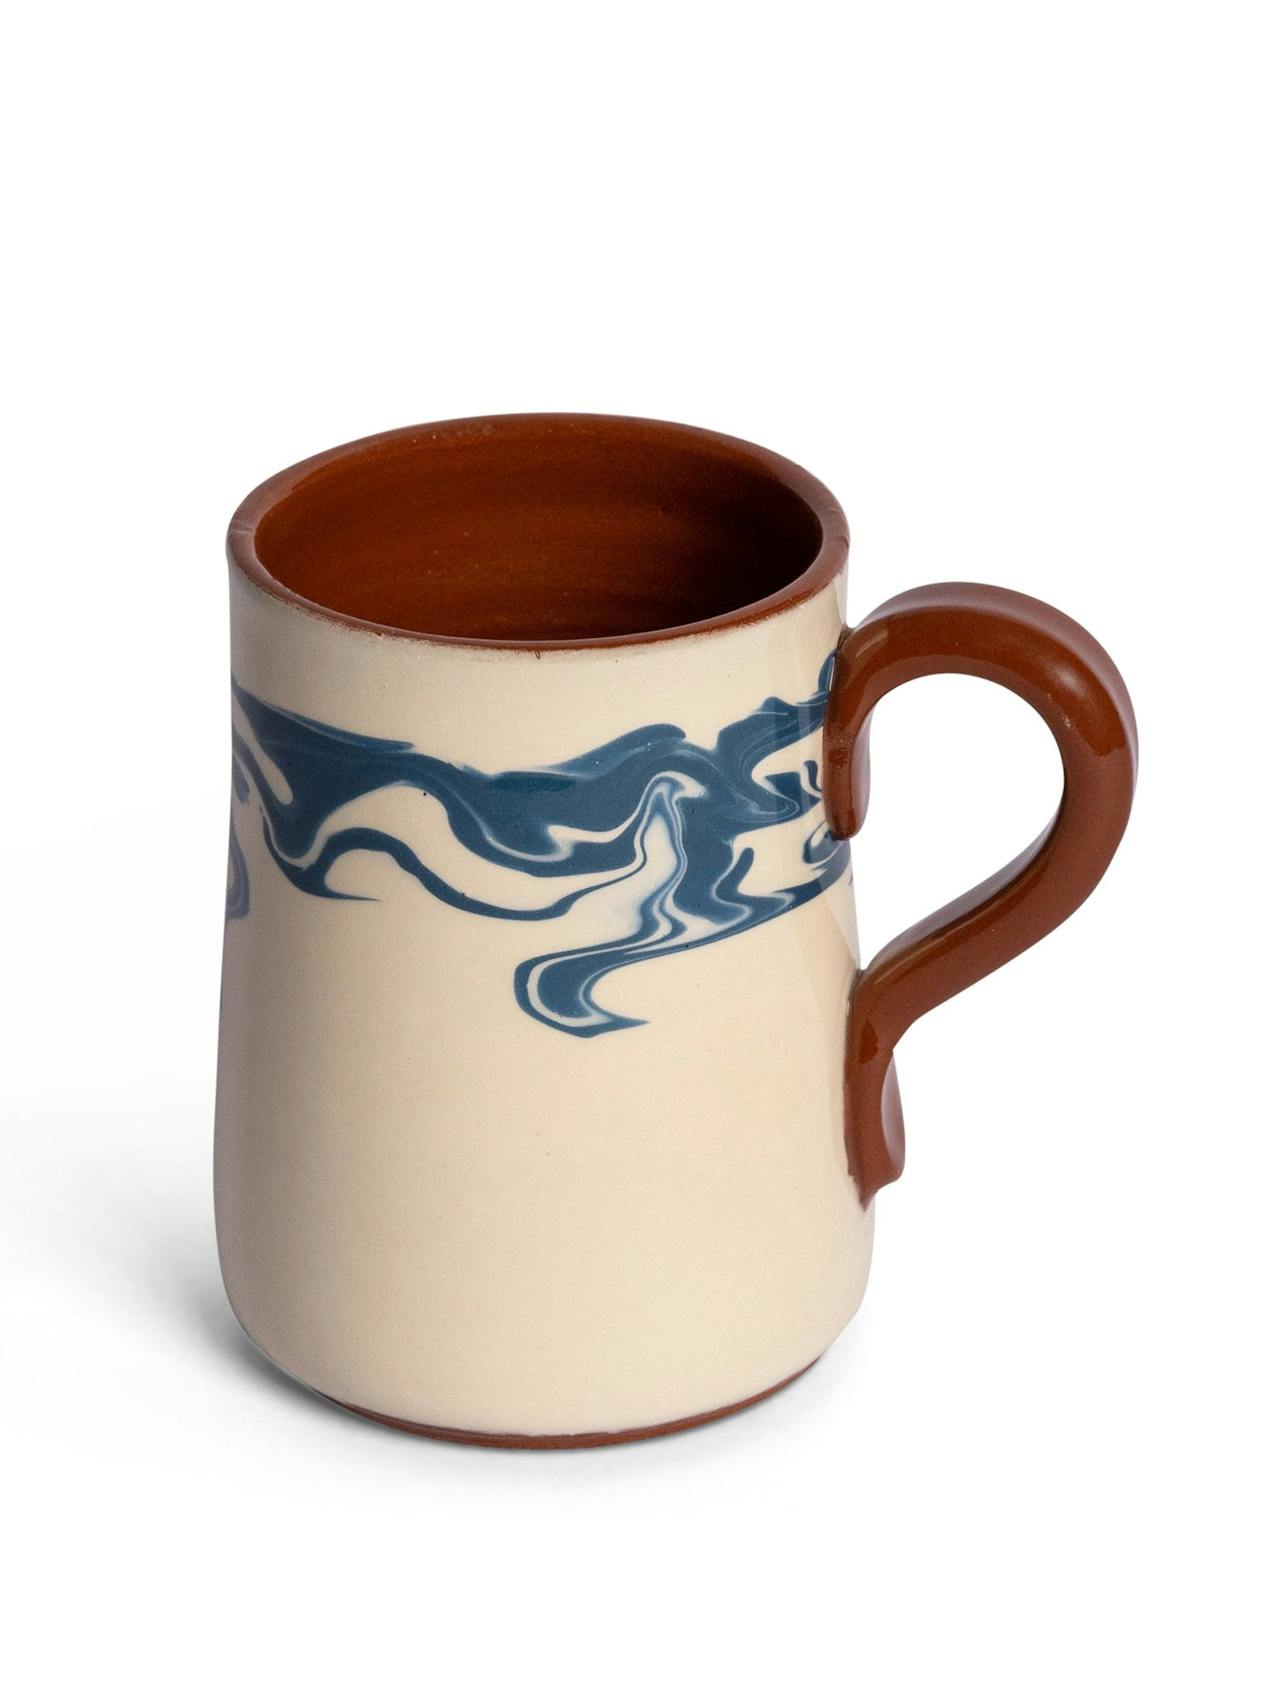 Marbre mug